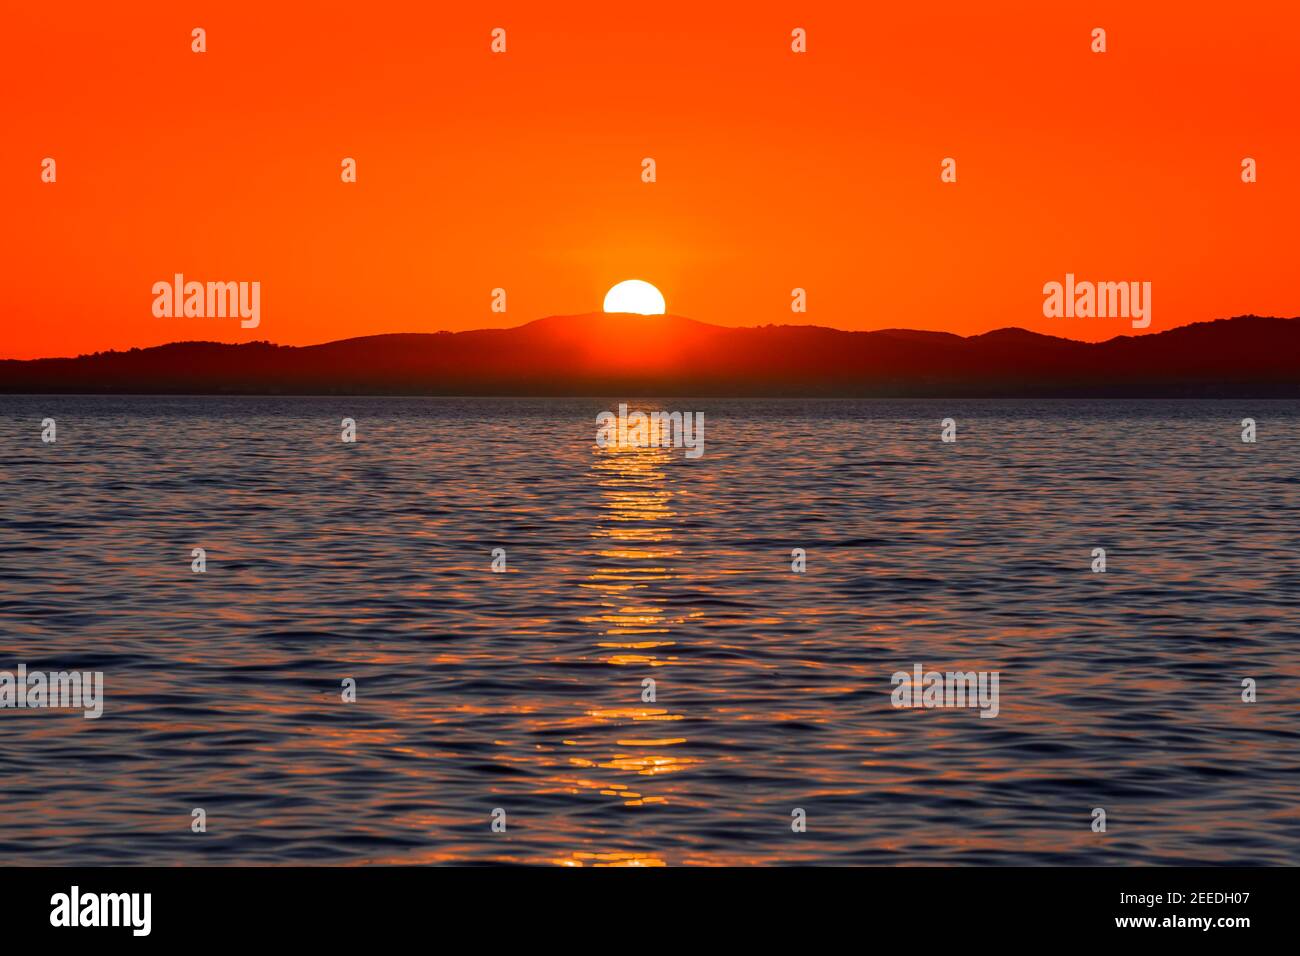 Magnifique coucher de soleil rouge sur la mer avec reflet du soleil dans l'eau et les montagnes à l'horizon, vue de la plage à Zadar, Dalmatie, Croatie Banque D'Images